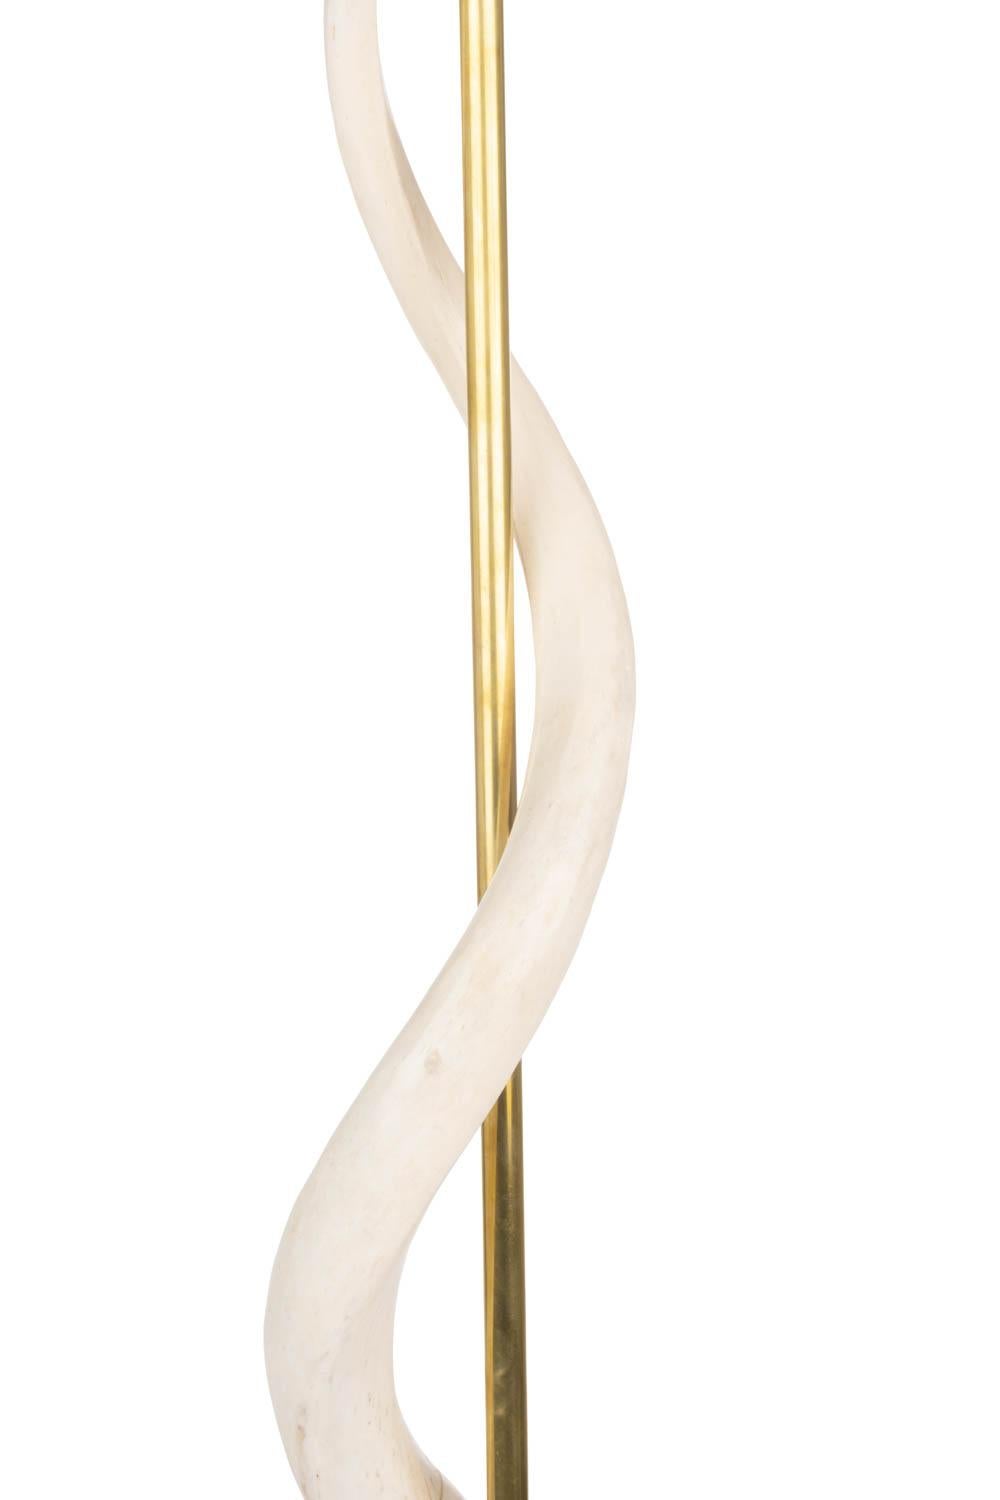 Diese in Südafrika handgefertigte, natürlich elegante Stehlampe besteht aus zwei umgekehrten afrikanischen Kudu-Hörnern, die einen Messingstab über einem runden Holzsockel umschließen, der mit cremefarbenem Devore-Rindsleder mit goldenen